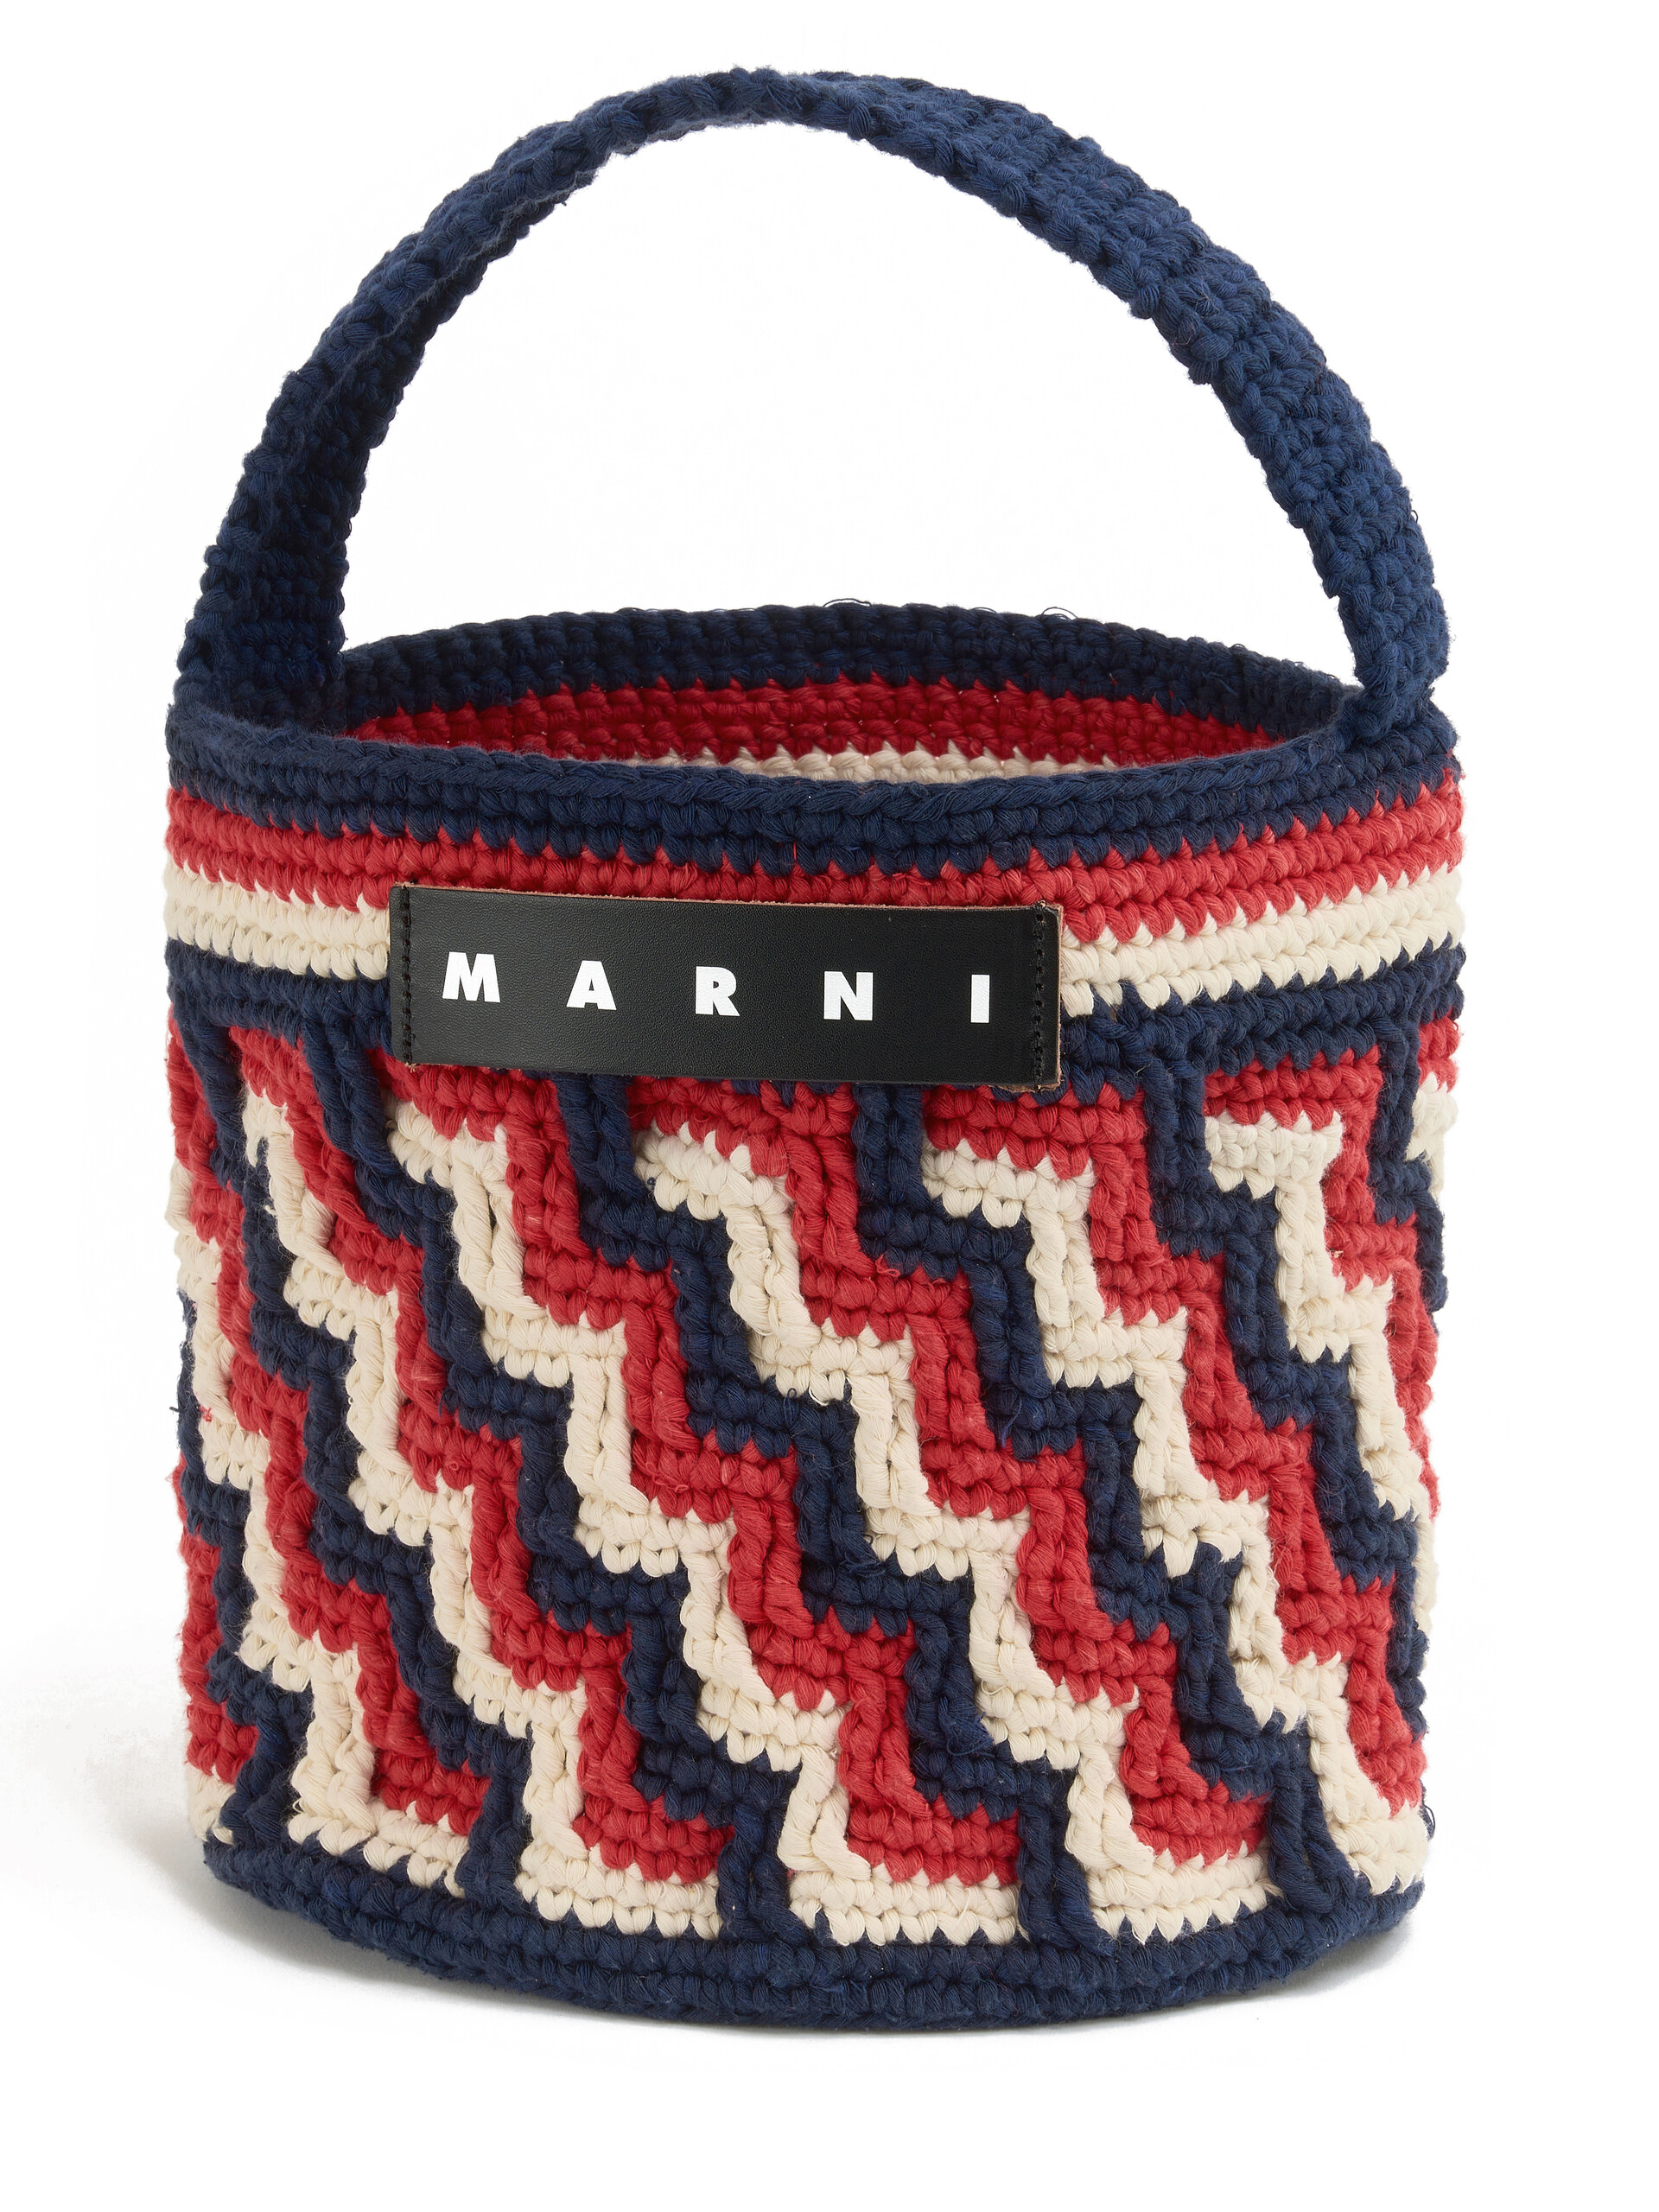 Borsa MARNI MARKET ROSAL in crochet blu - Borse shopping - Image 4